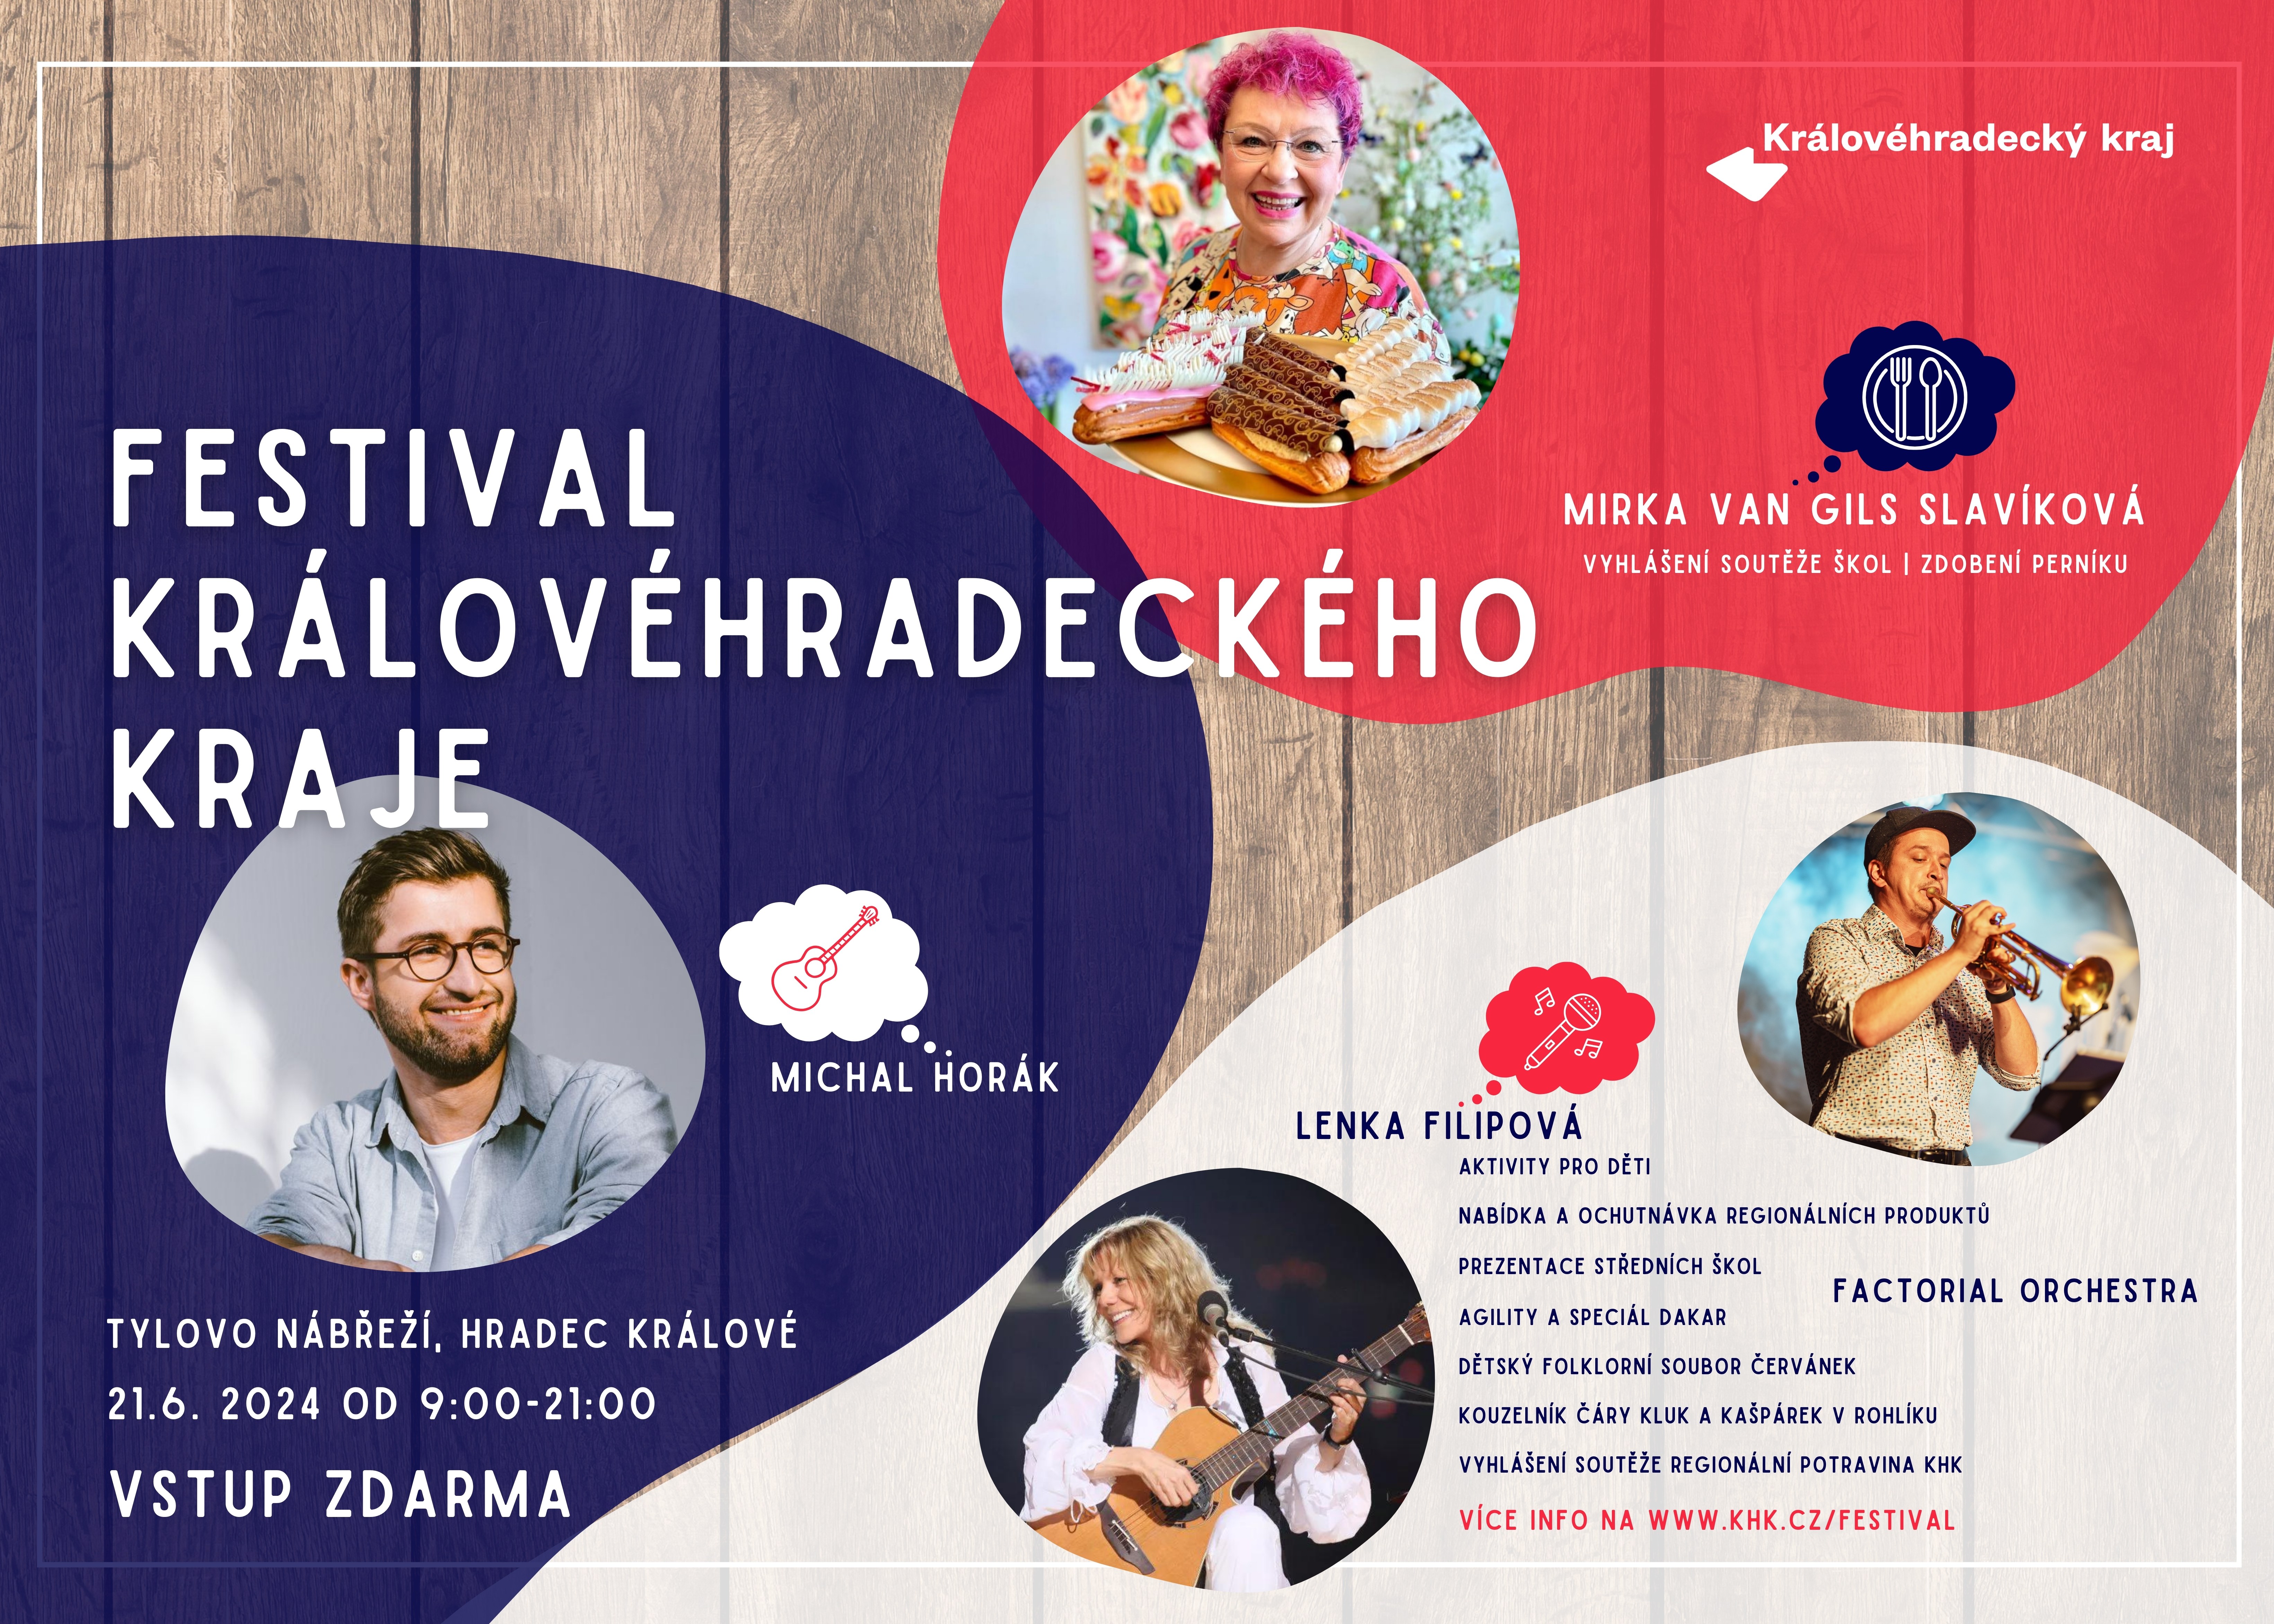 Festival Královéhradeckého kraje 2024: spojení kultury a zábavy na Tylově nábřeží